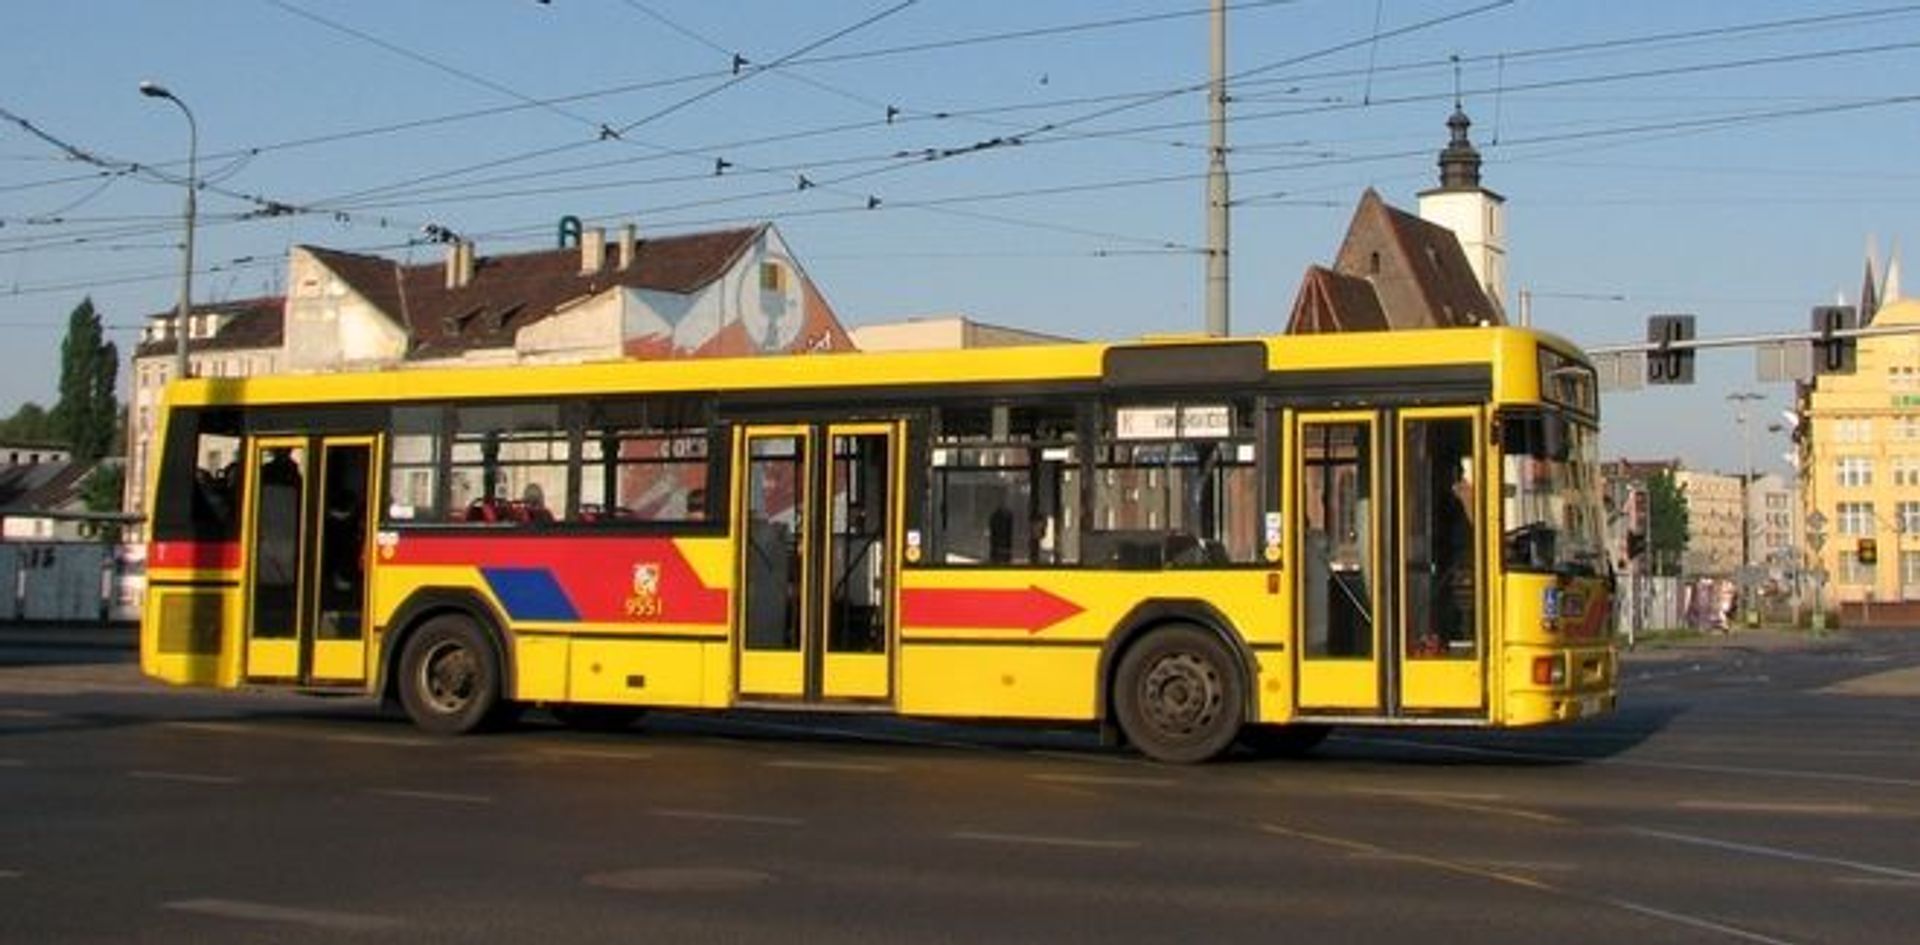  Od piątku autobusy zatrzymają się na nowym przystanku na północy miasta